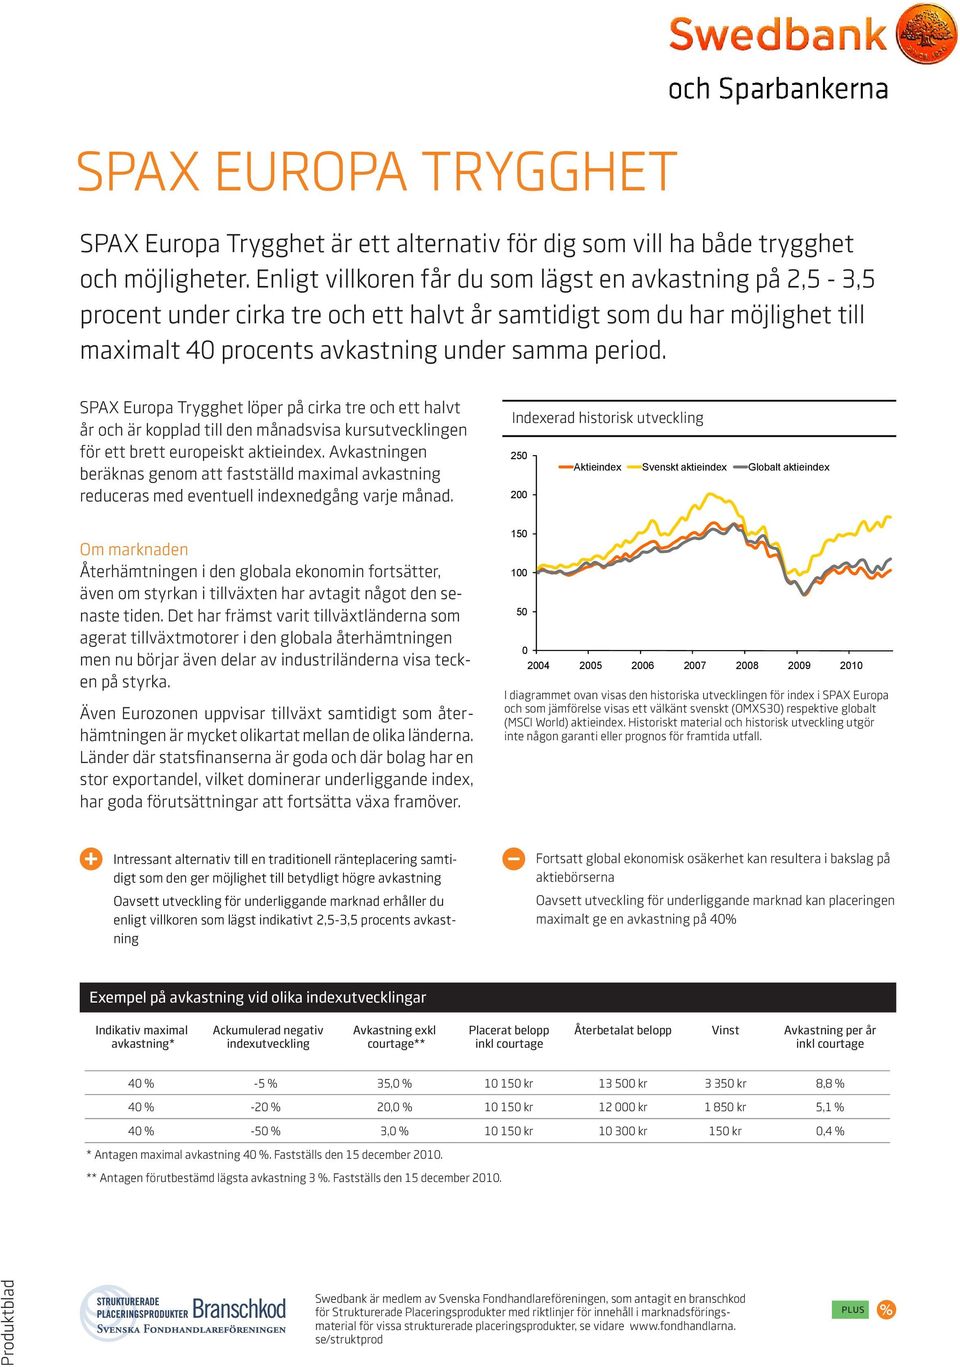 SPAX Europa Trygghet löper på cirka tre och ett halvt år och är kopplad till den månadsvisa kursutvecklingen för ett brett europeiskt aktieindex.